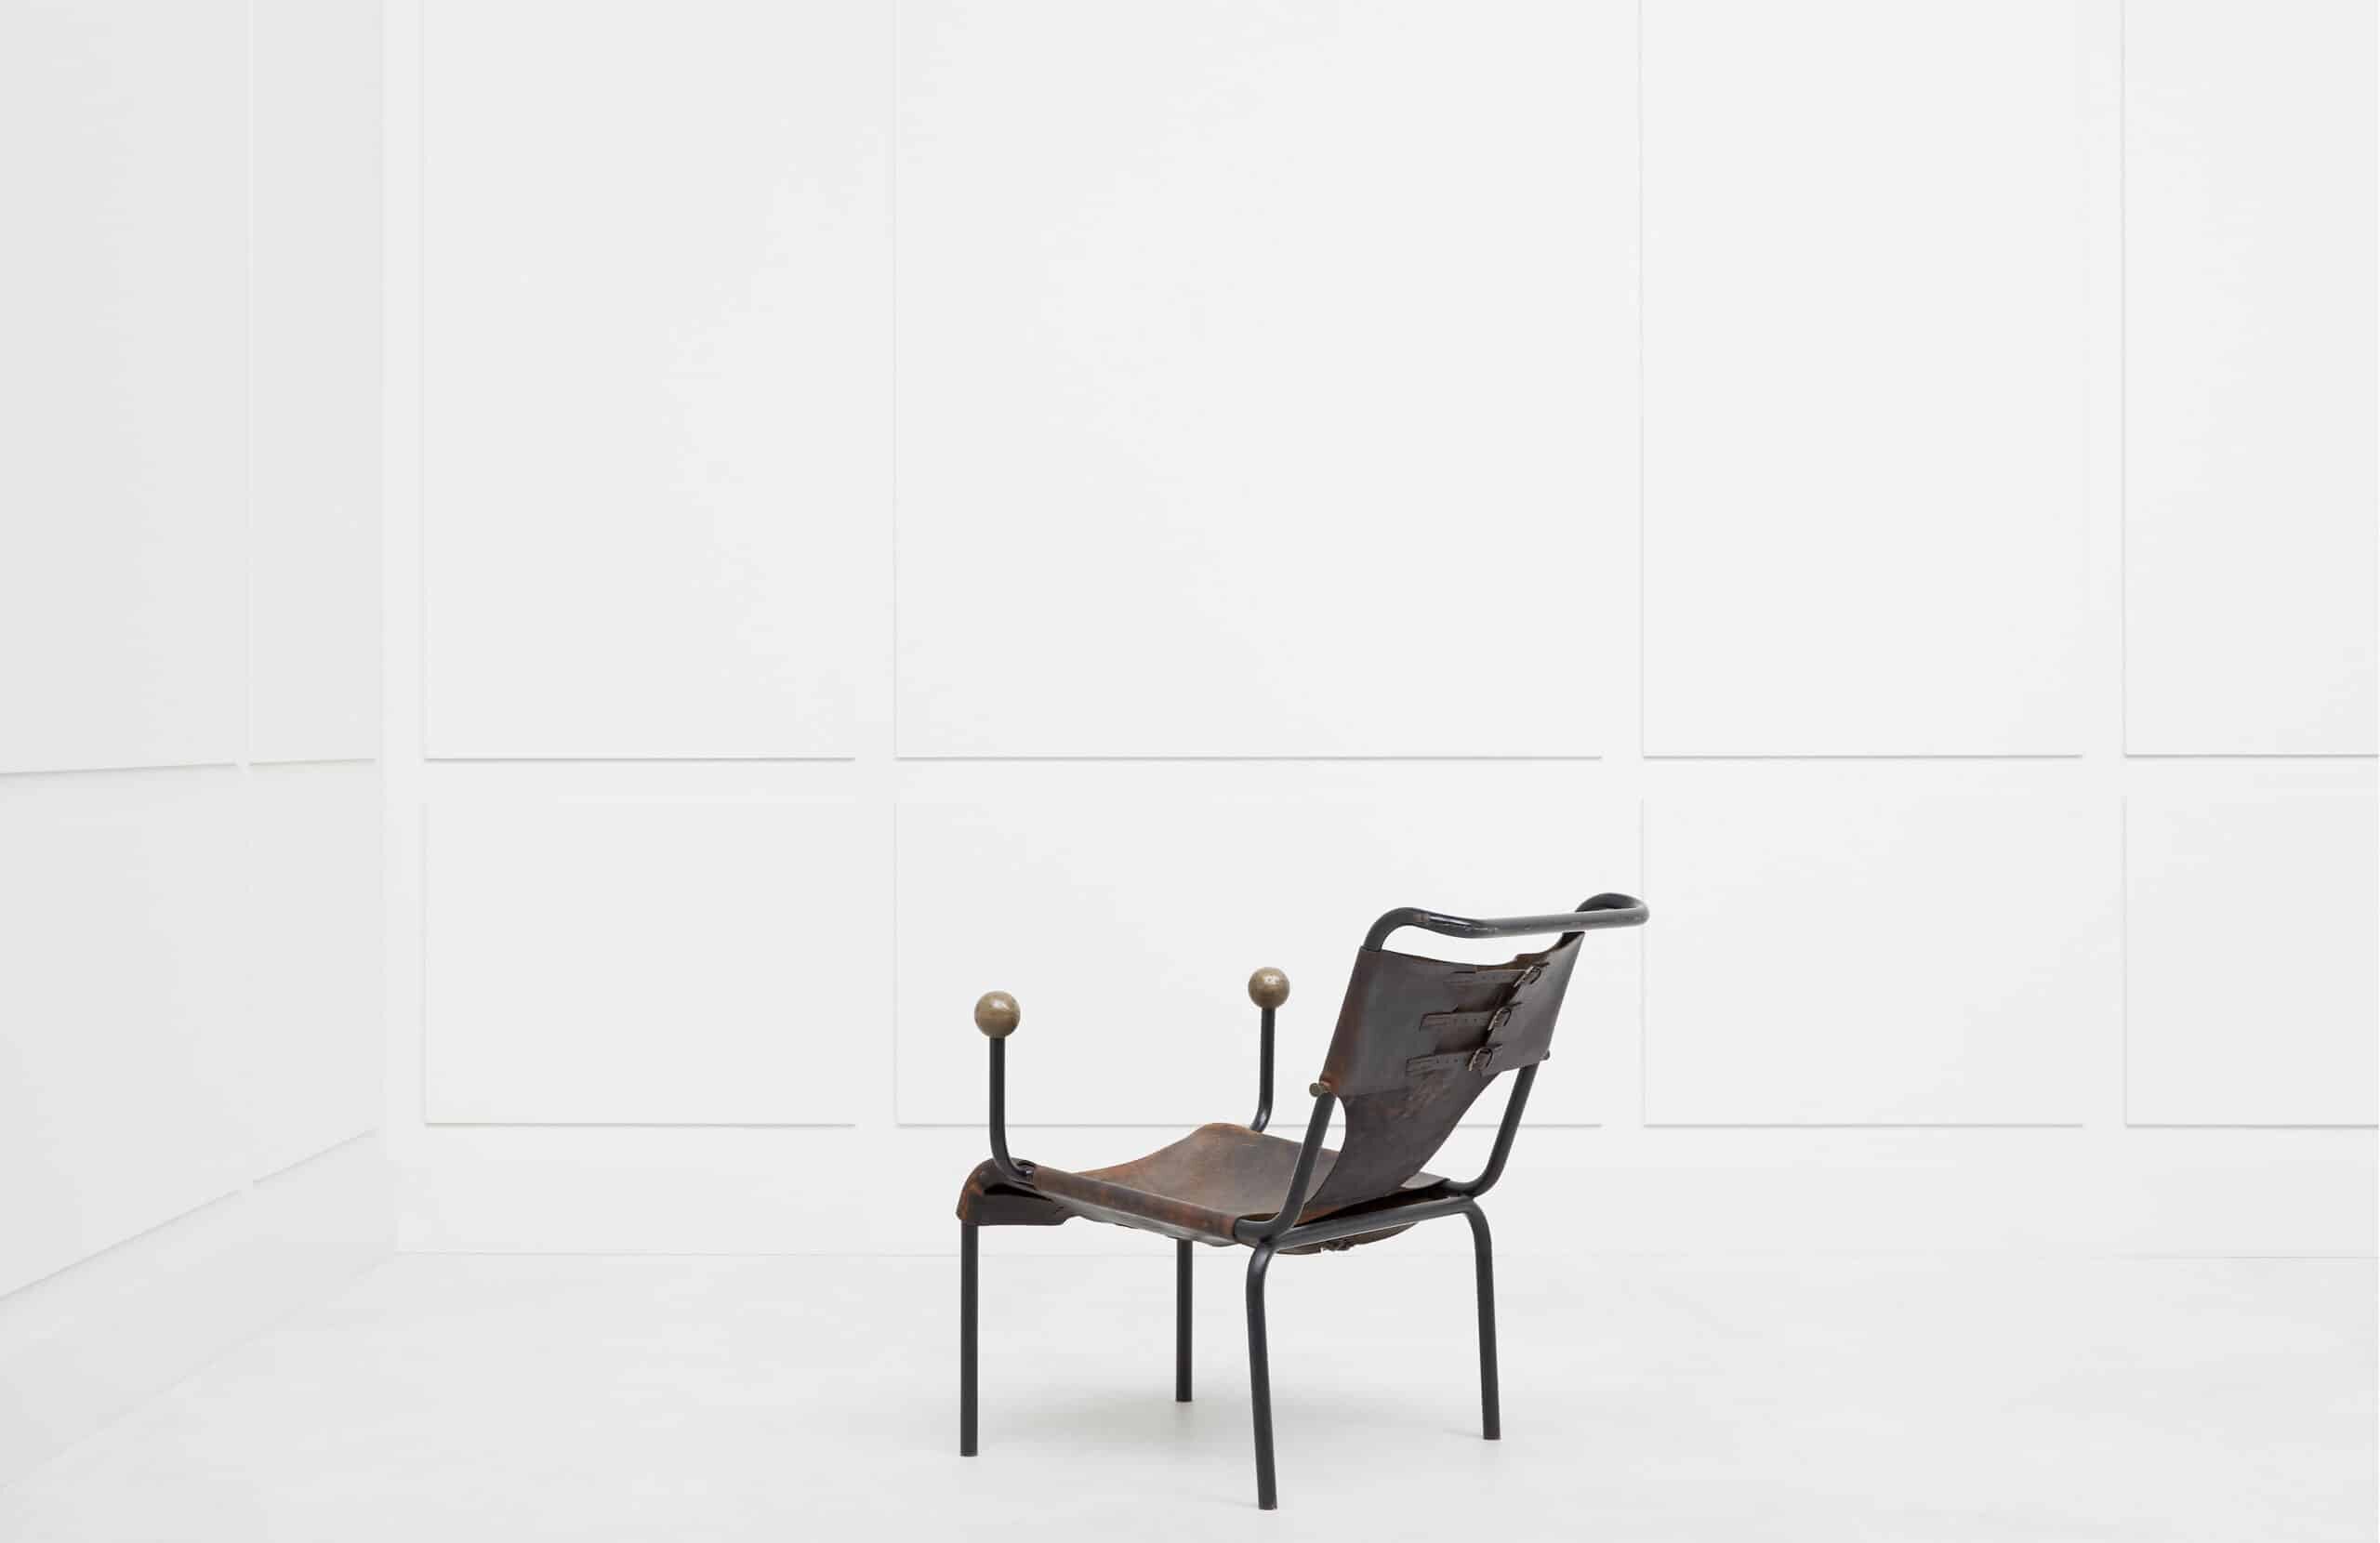 Lina Bo Bardi, Rare et originale chaise “Bola”, vue 01